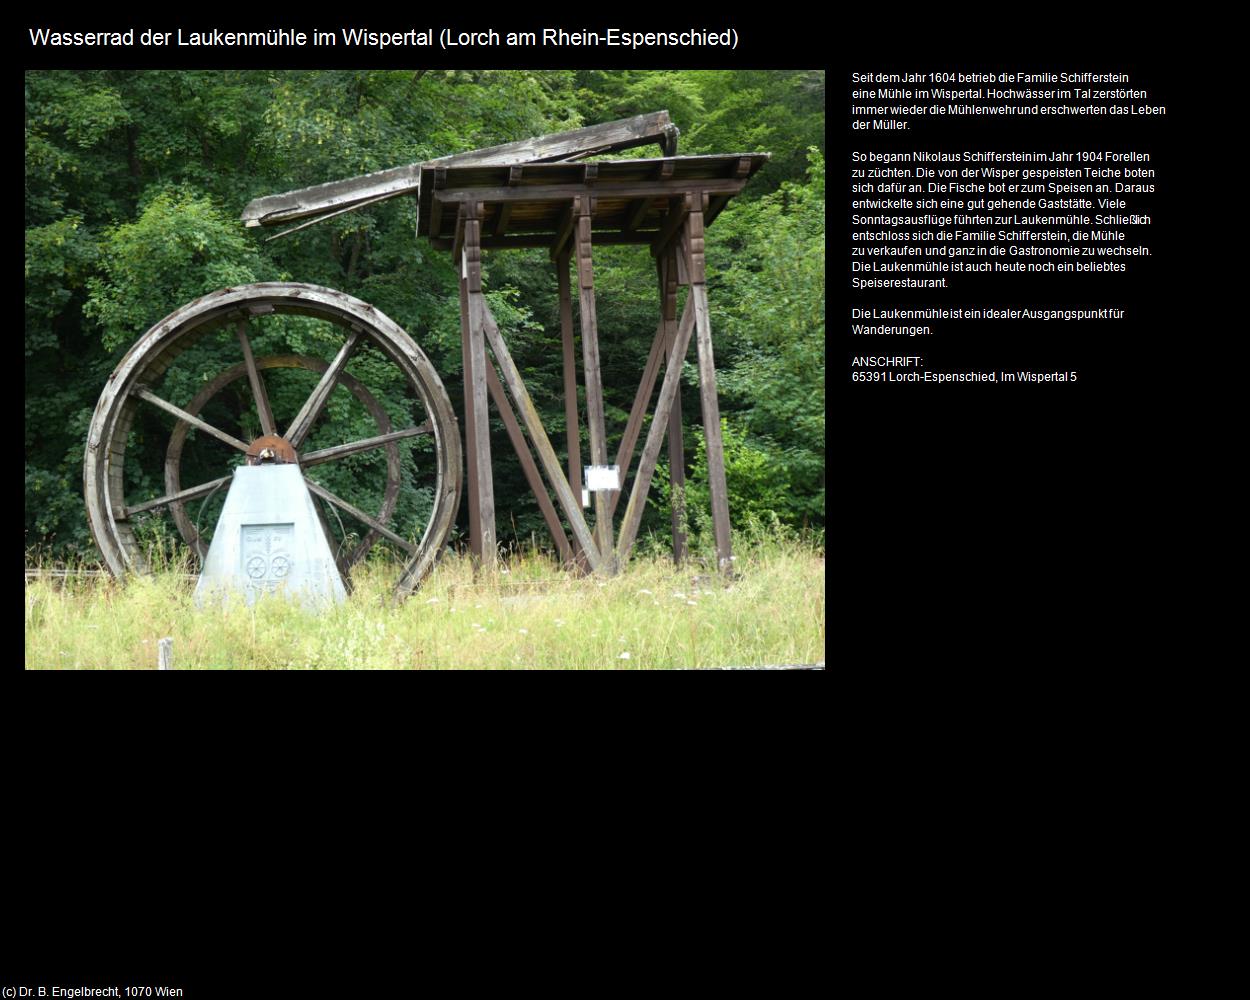 Wasserrad der Laukenmühle im Wispertal (Espenschied)  (Lorch am Rhein) in Kulturatlas-HESSEN